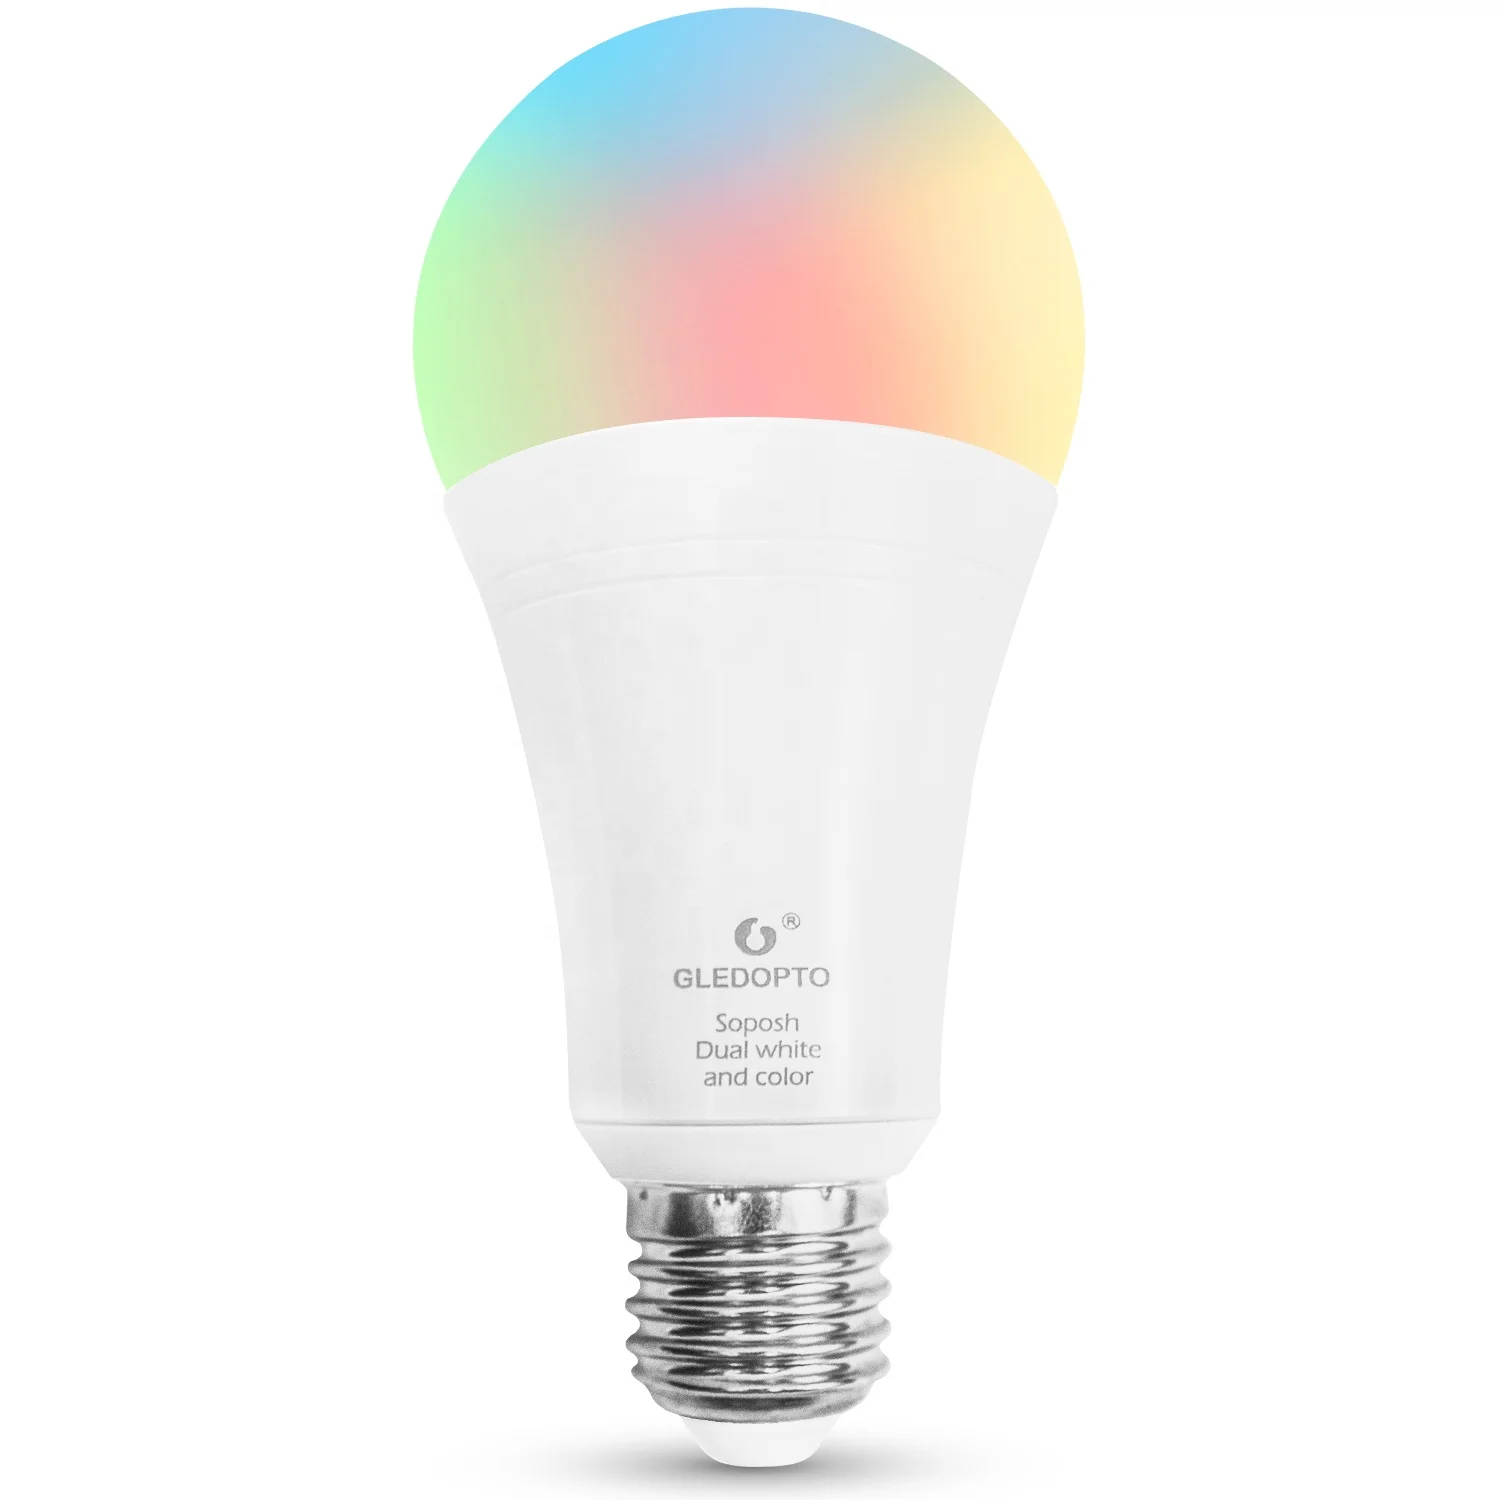 Smart LED Light Bulbs for Home Homekit App Control Best Smart Light Bulbs ZigBee 3.0 Hubs Compatible